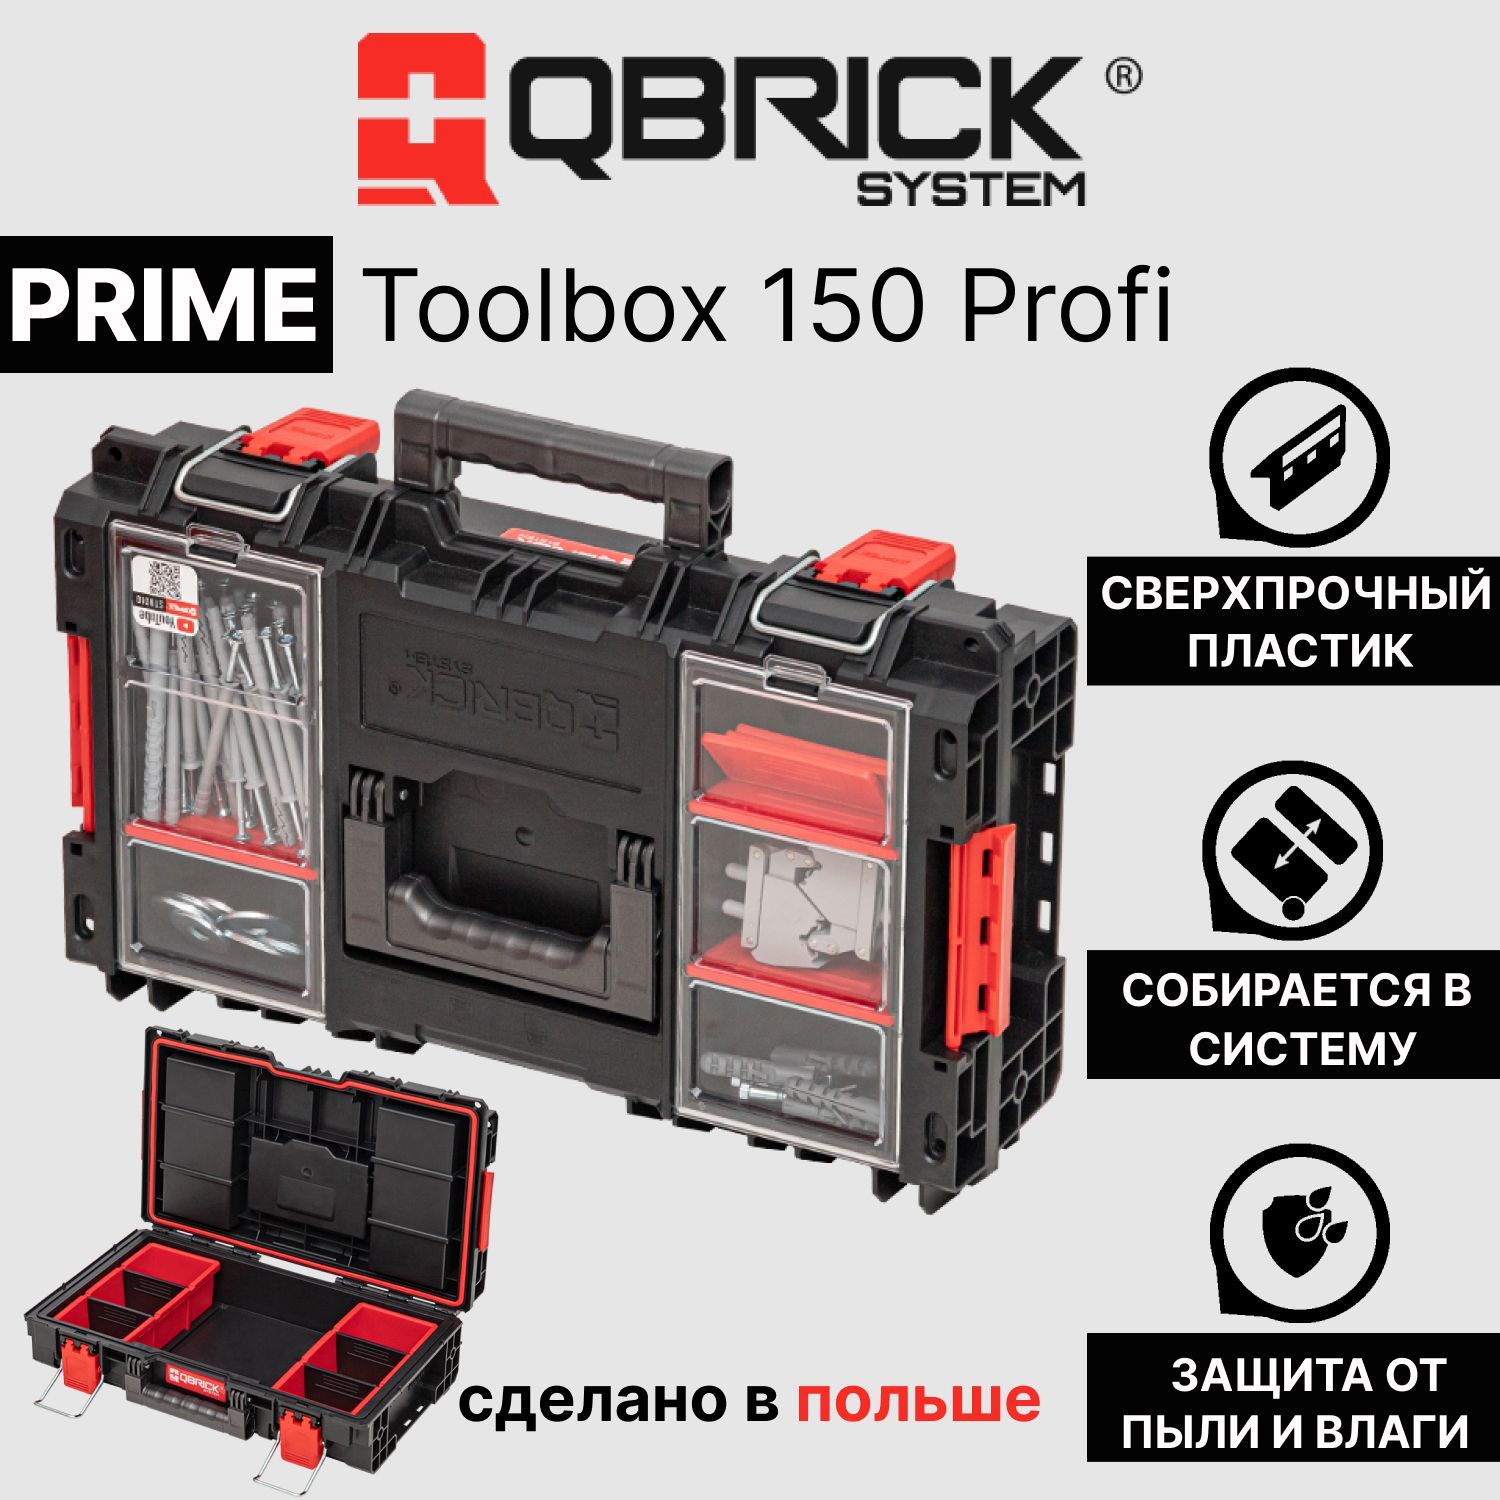 Ящик для инструментов Qbrick System Prime Toolbox 250. Qbrick System Pro Drawer 3 обзор. Qbrick system prime